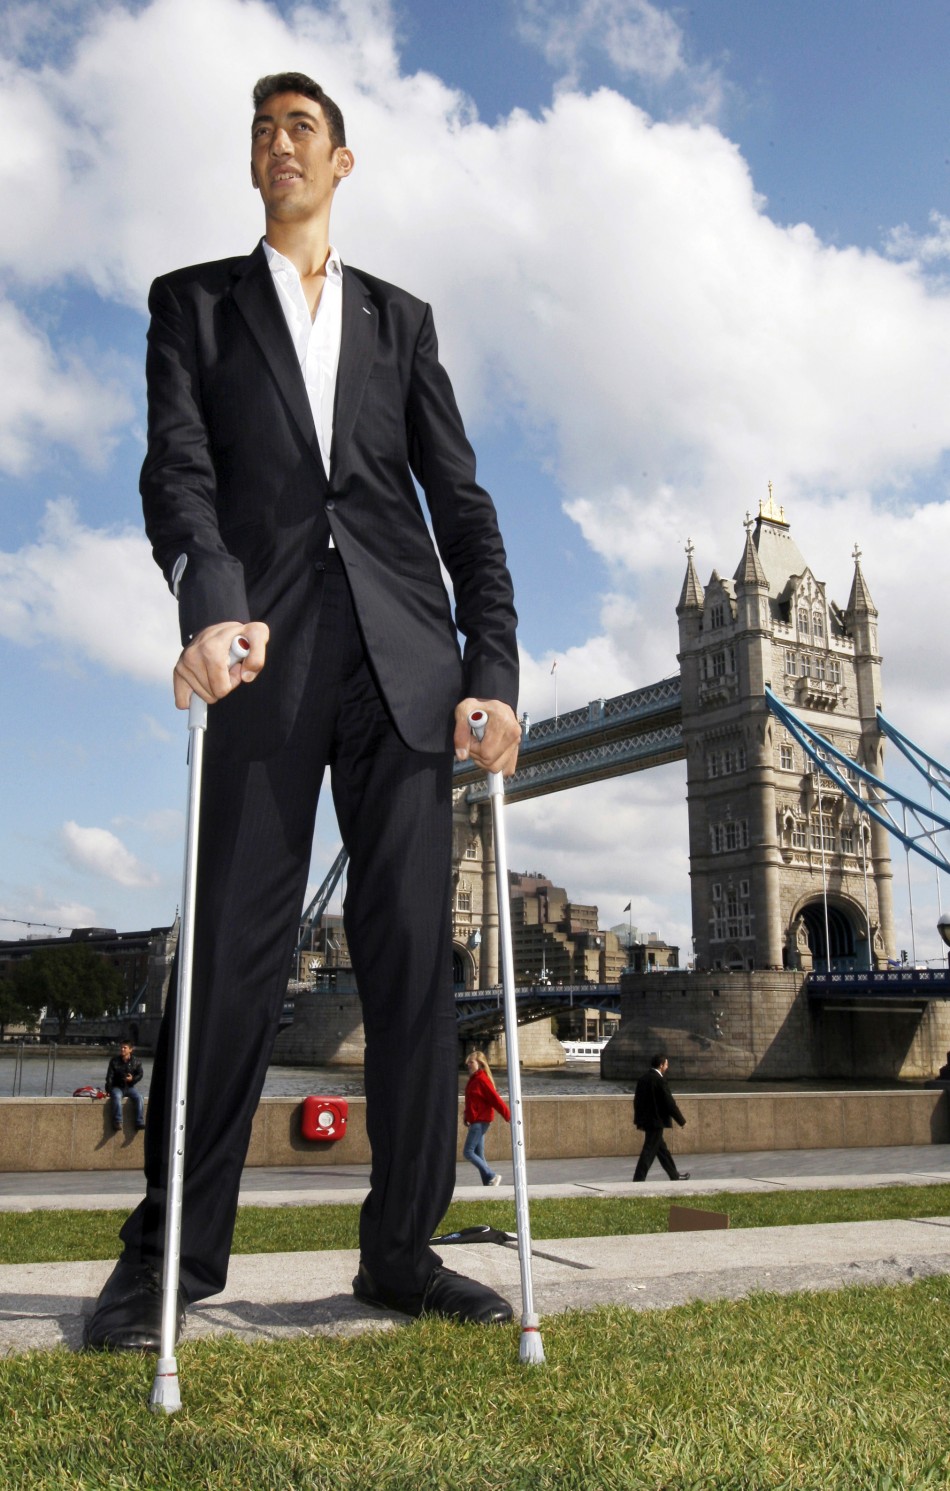 Sultan Kosen Worlds Tallest Man